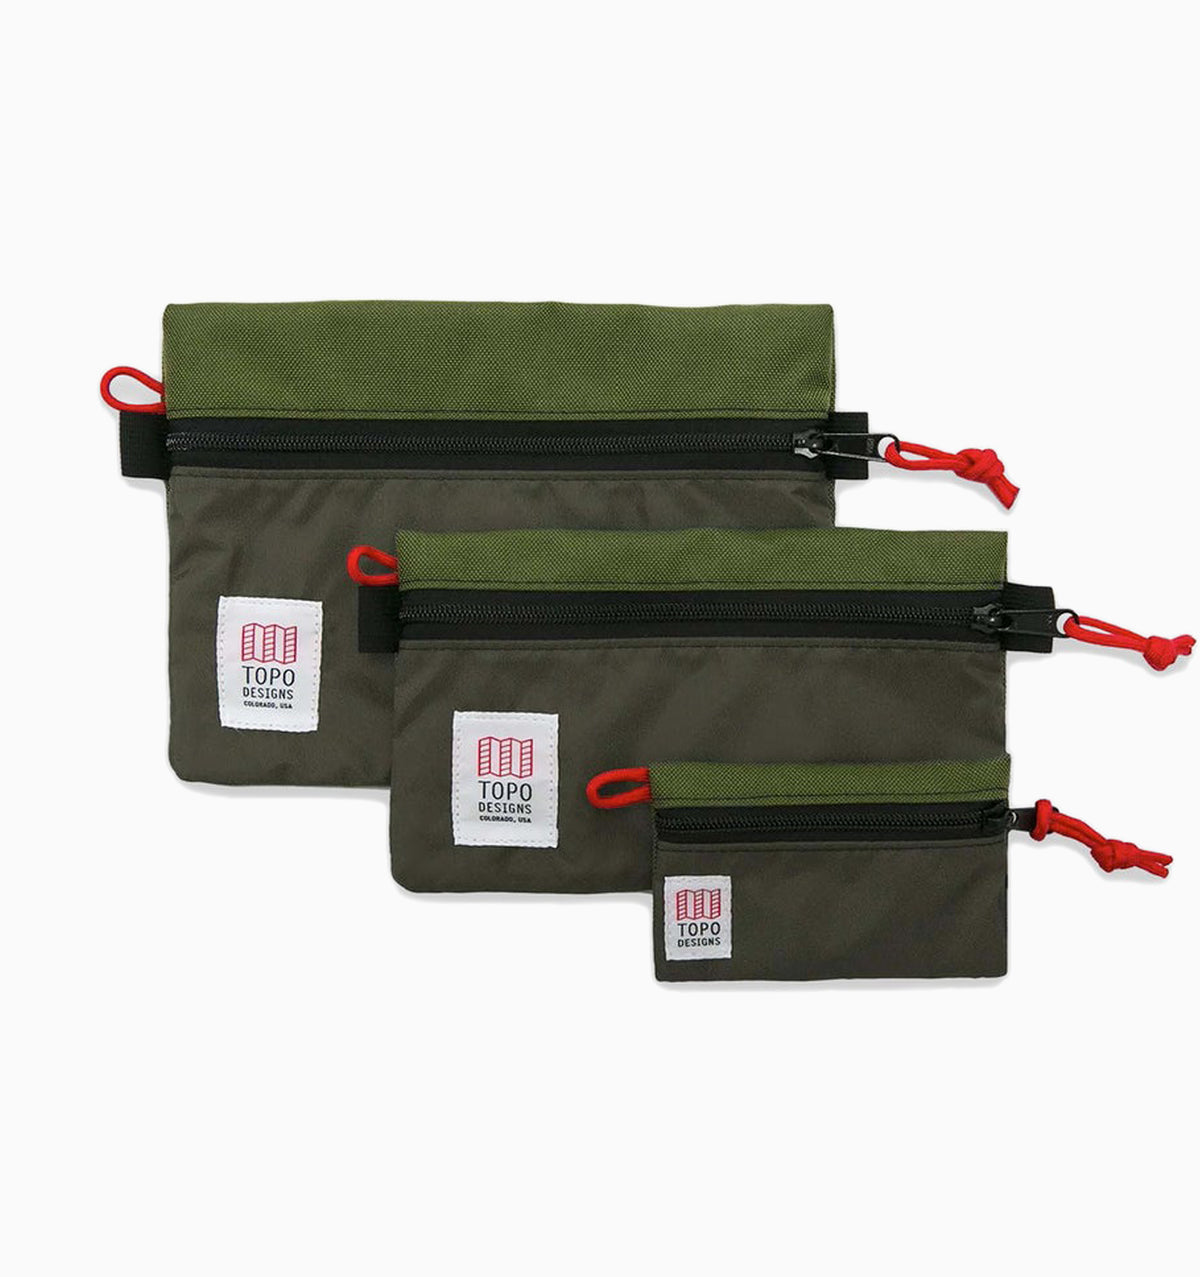 Topo Designs Micro Accessory Bag - Olive